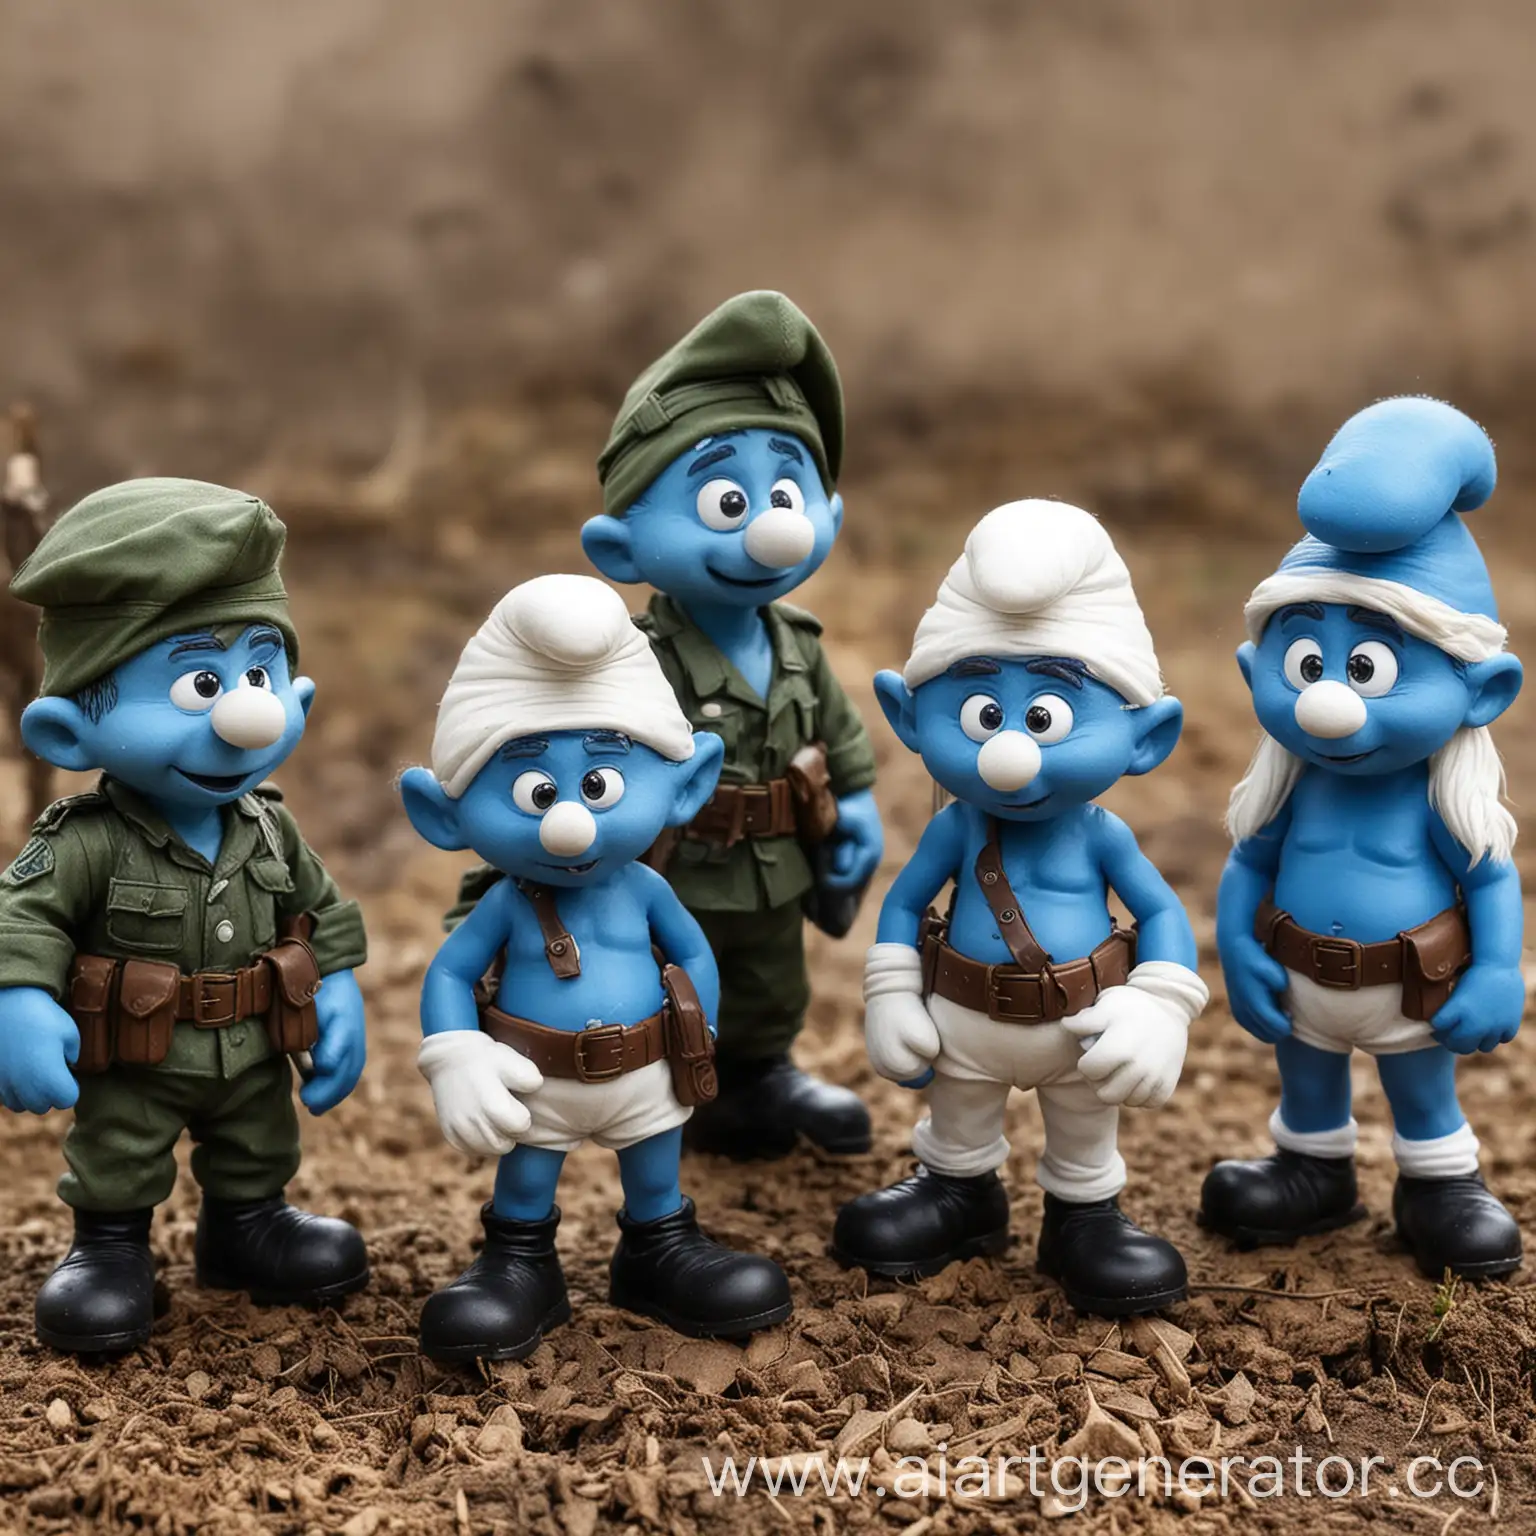 Smurfs-in-Military-Attire-A-Unique-Artistic-Illustration